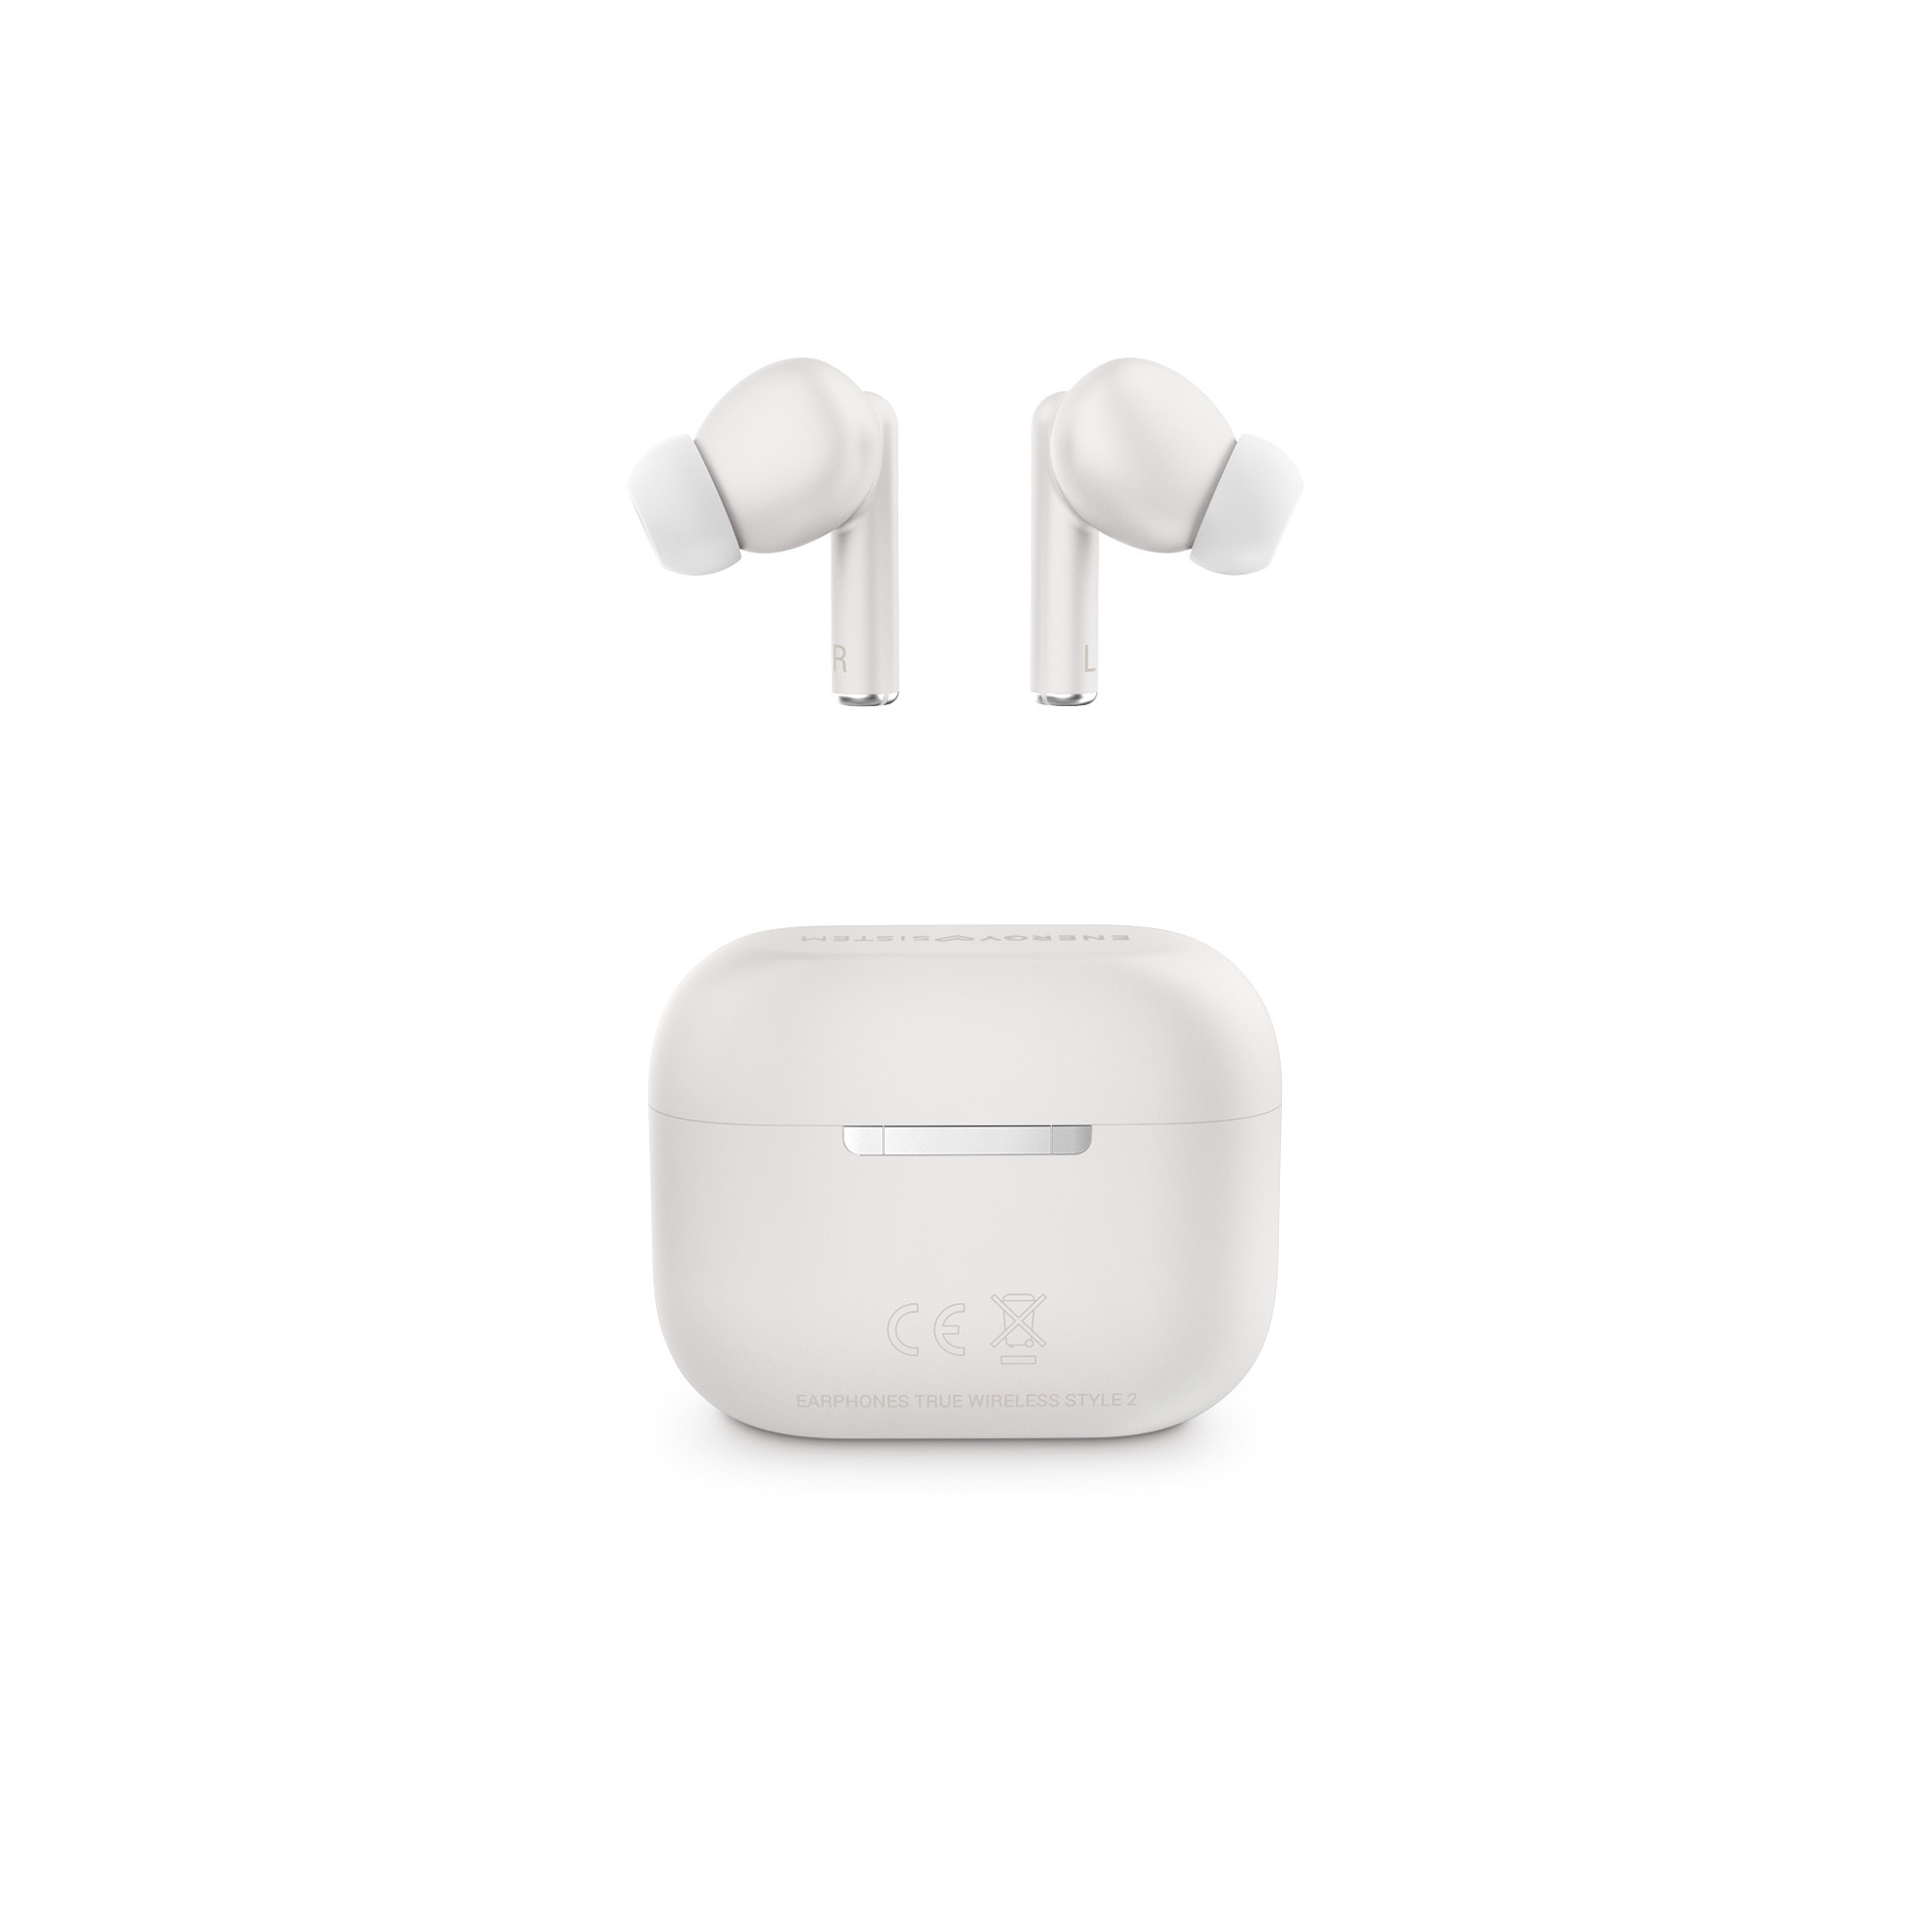 Hands-free Bluetooth 5.0 earphones